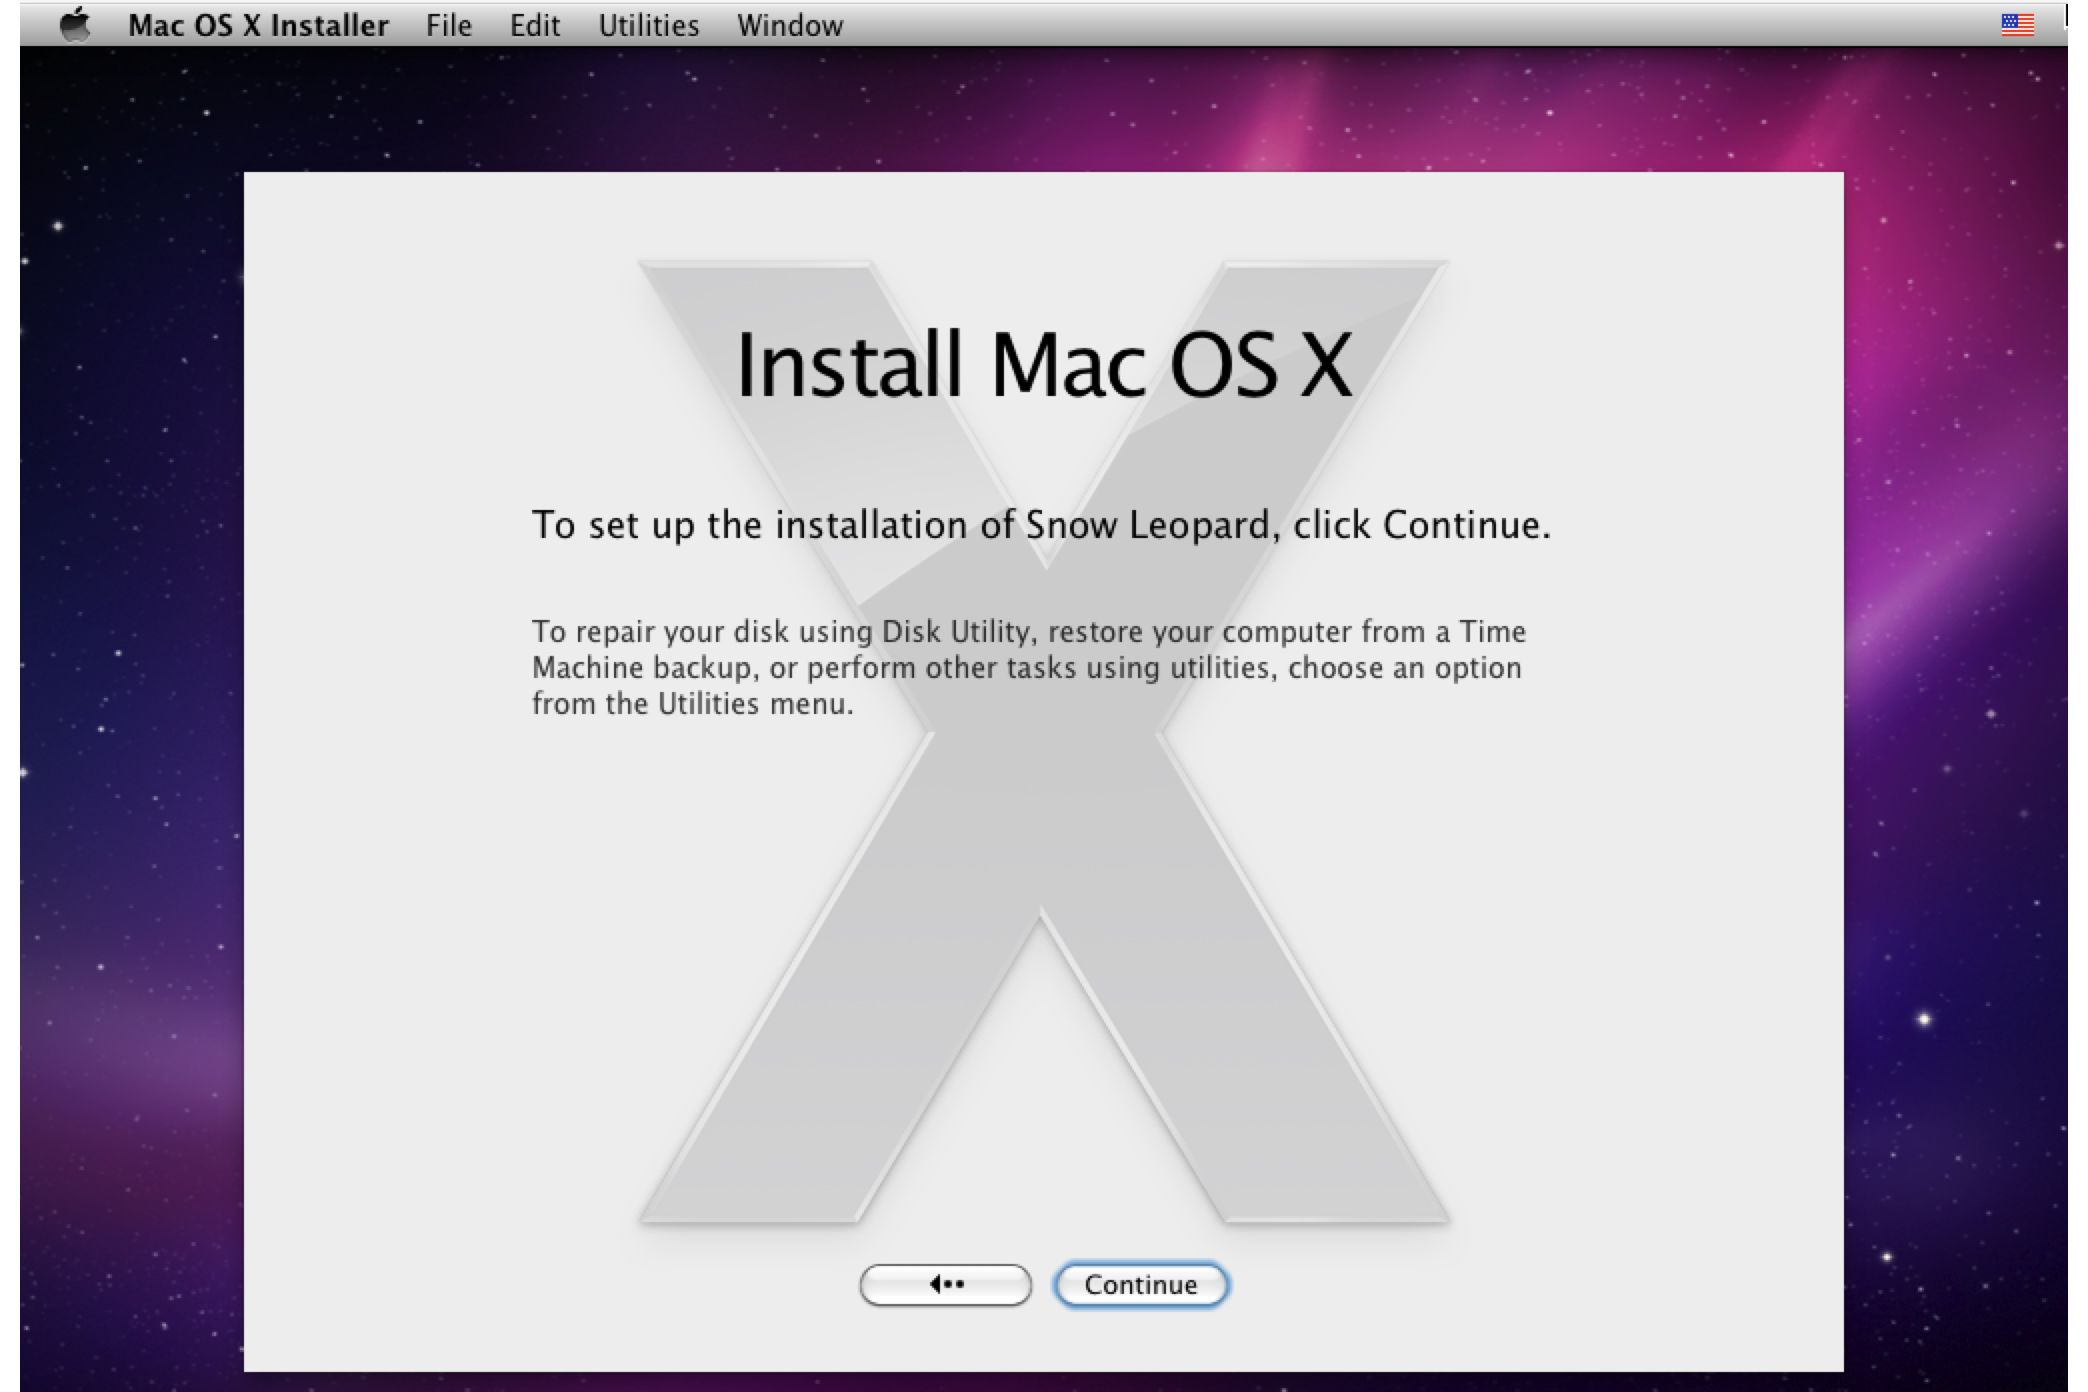 app store for mac 10.5